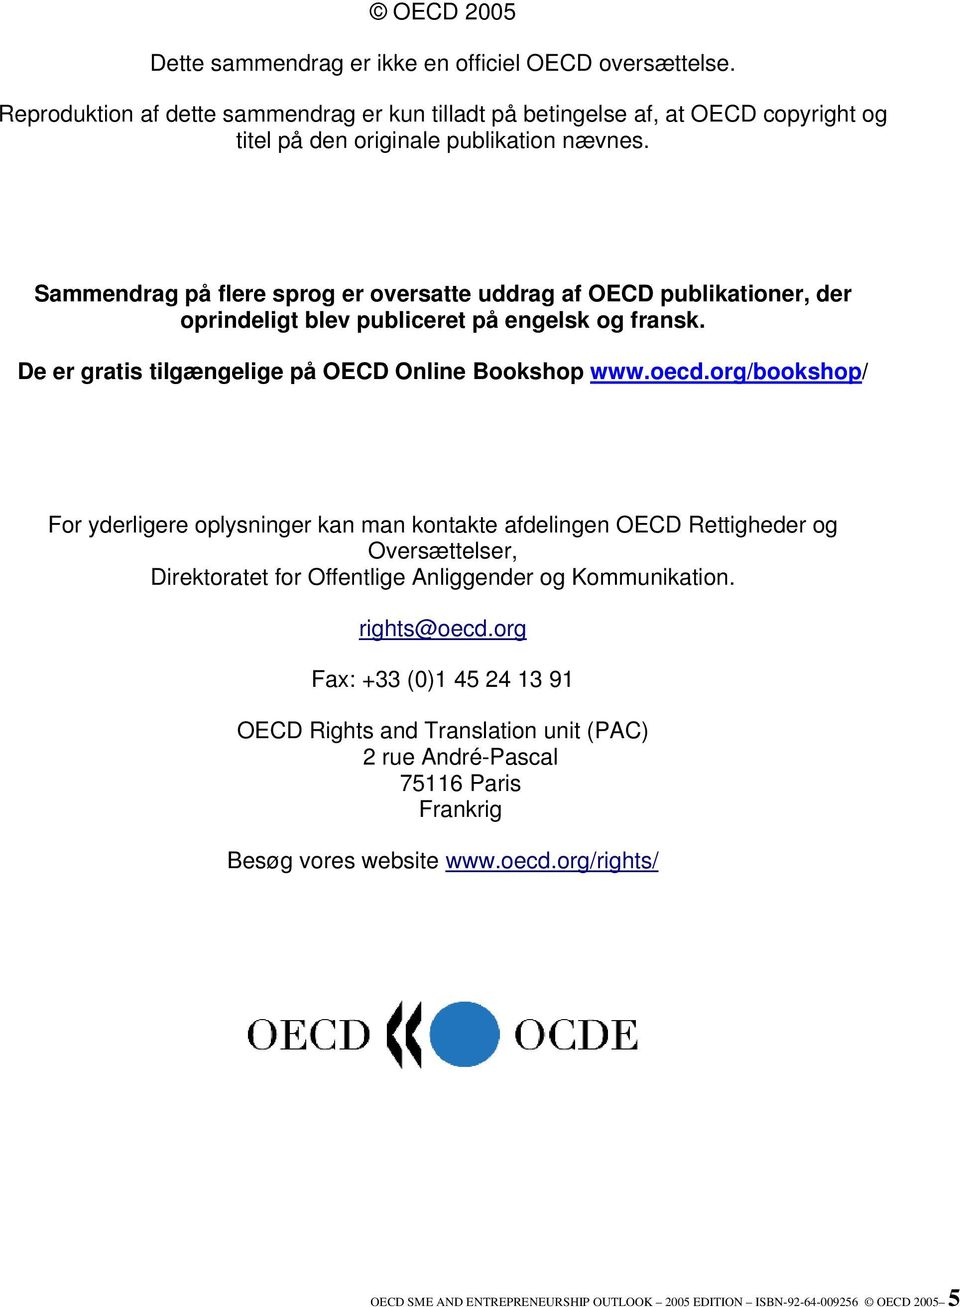 org/bookshop/ For yderligere oplysninger kan man kontakte afdelingen OECD Rettigheder og Oversættelser, Direktoratet for Offentlige Anliggender og Kommunikation. rights@oecd.